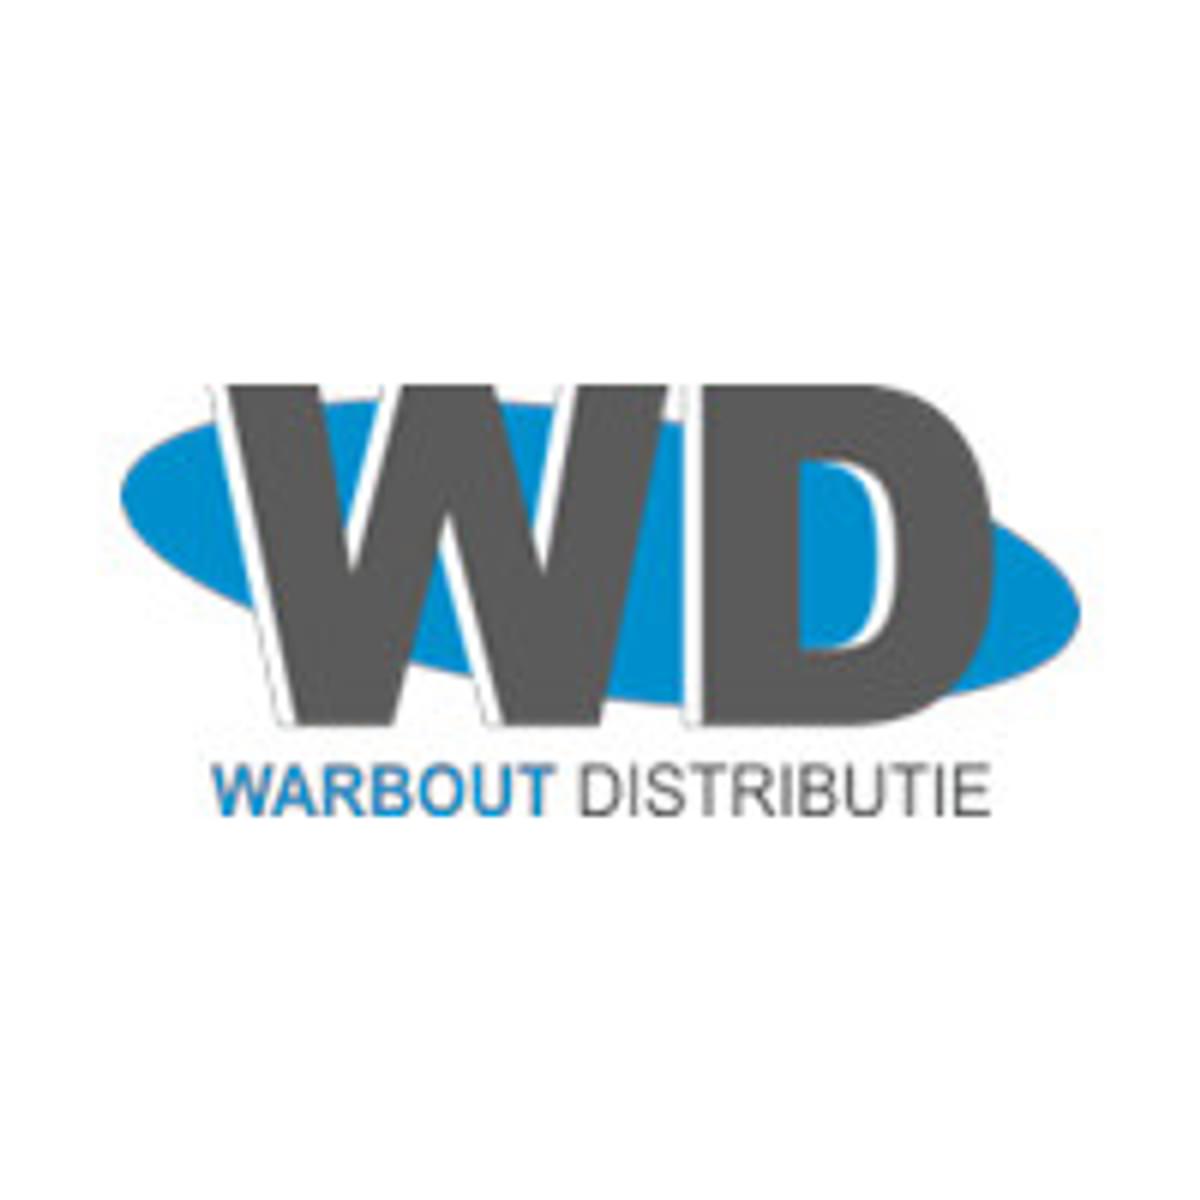 Warbout Distributie verhuist naar ruimere bedrijfshal image